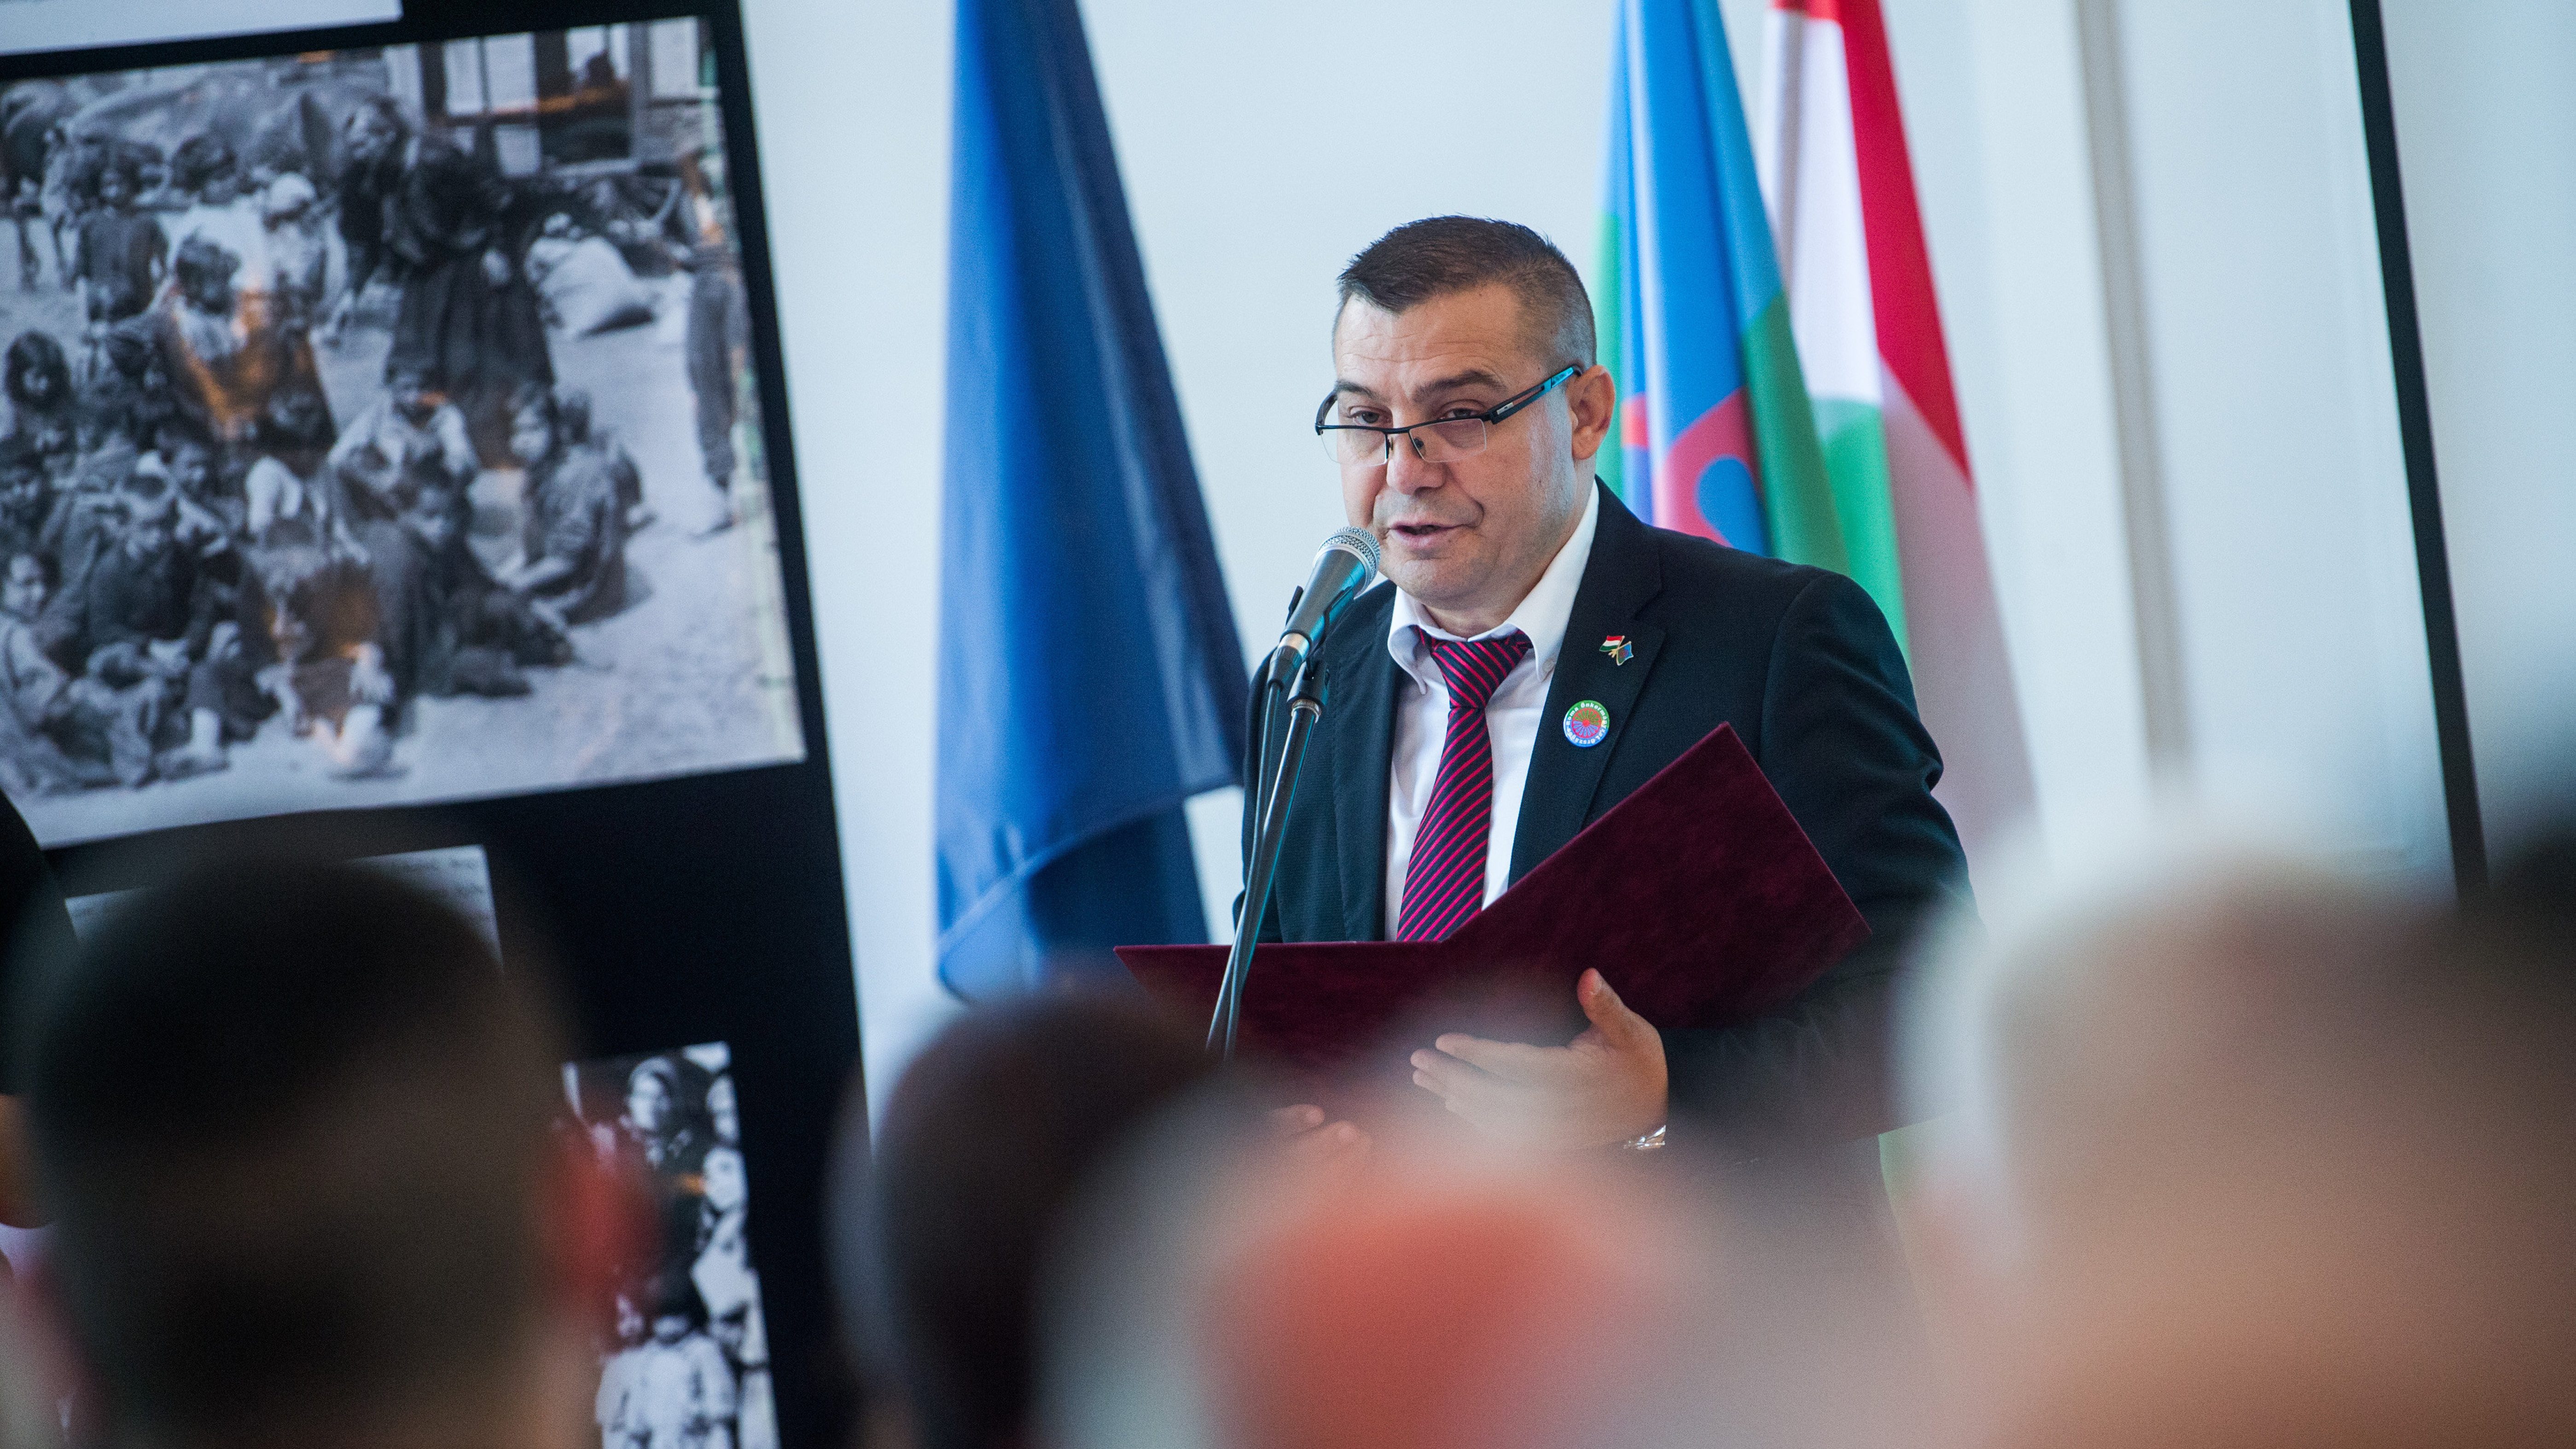 527 millió forintot követel vissza a kormány a roma önkormányzattól